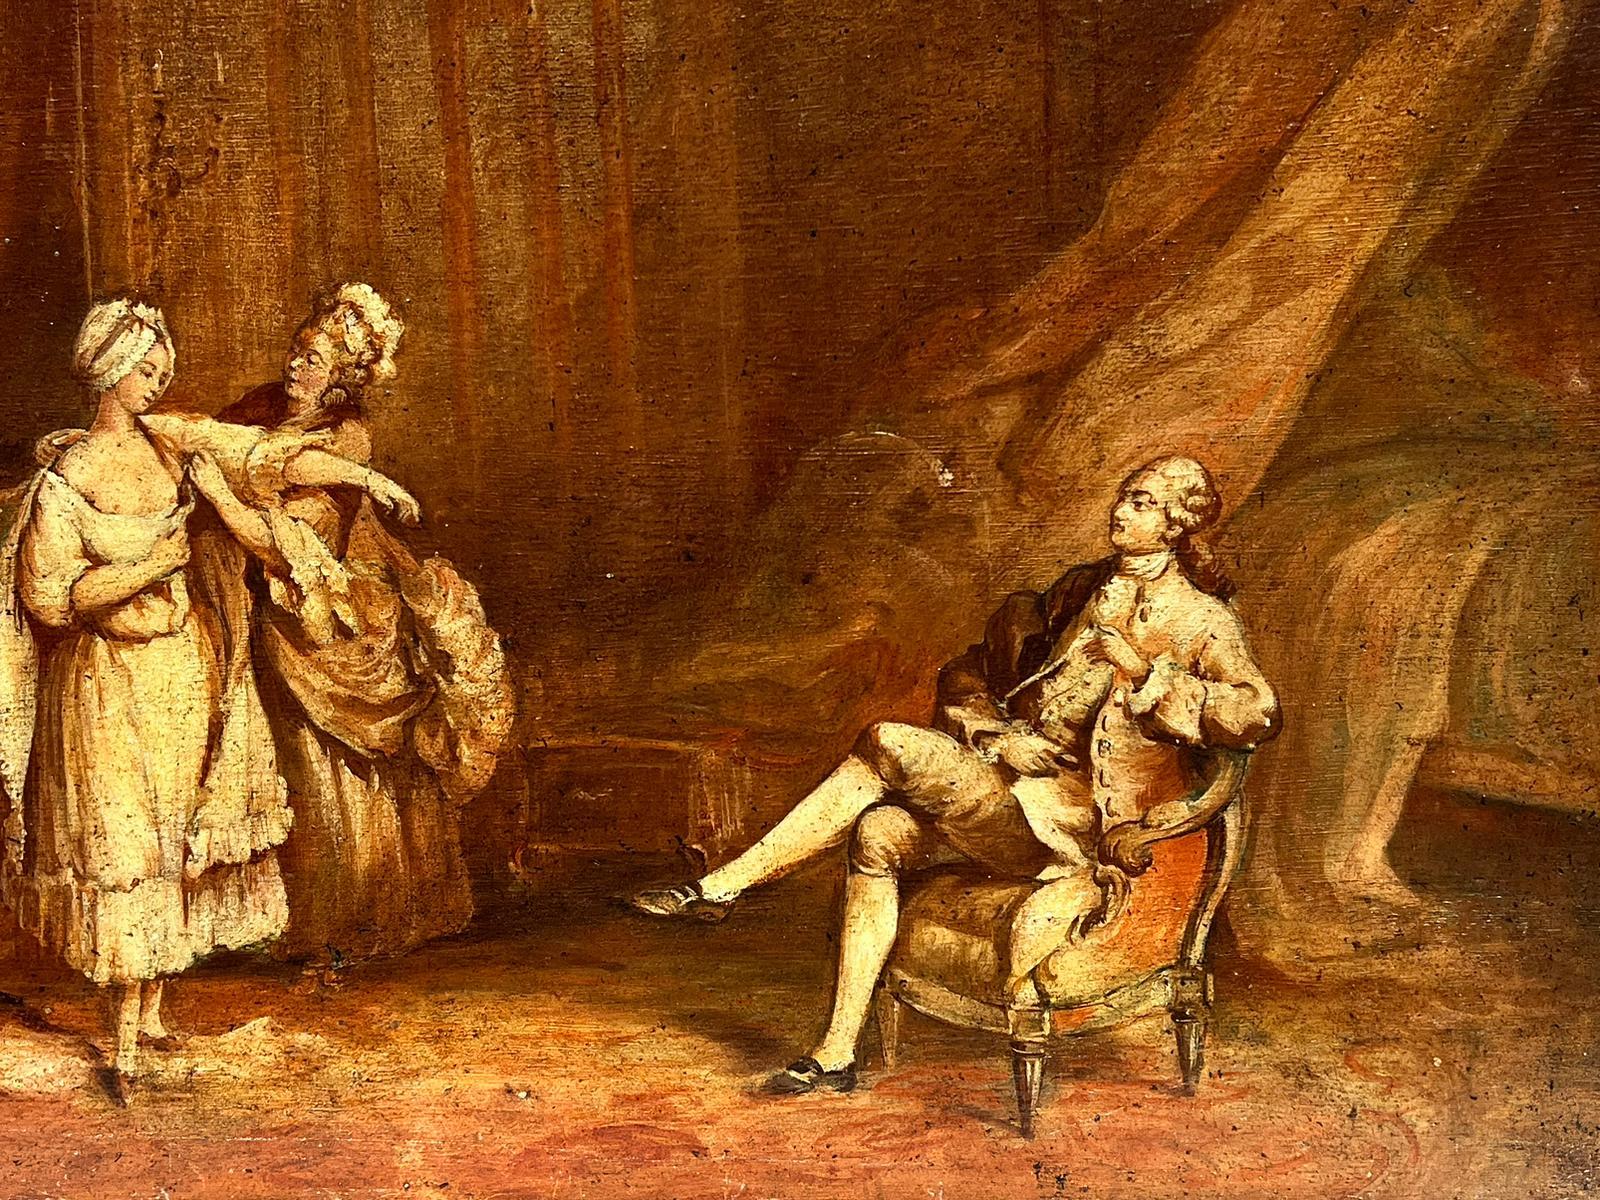 Peinture à l'huile française des années 1800 - Élégante période rococo - Figures d'intérieur - habillage de la dame - Rococo Painting par French Rococo